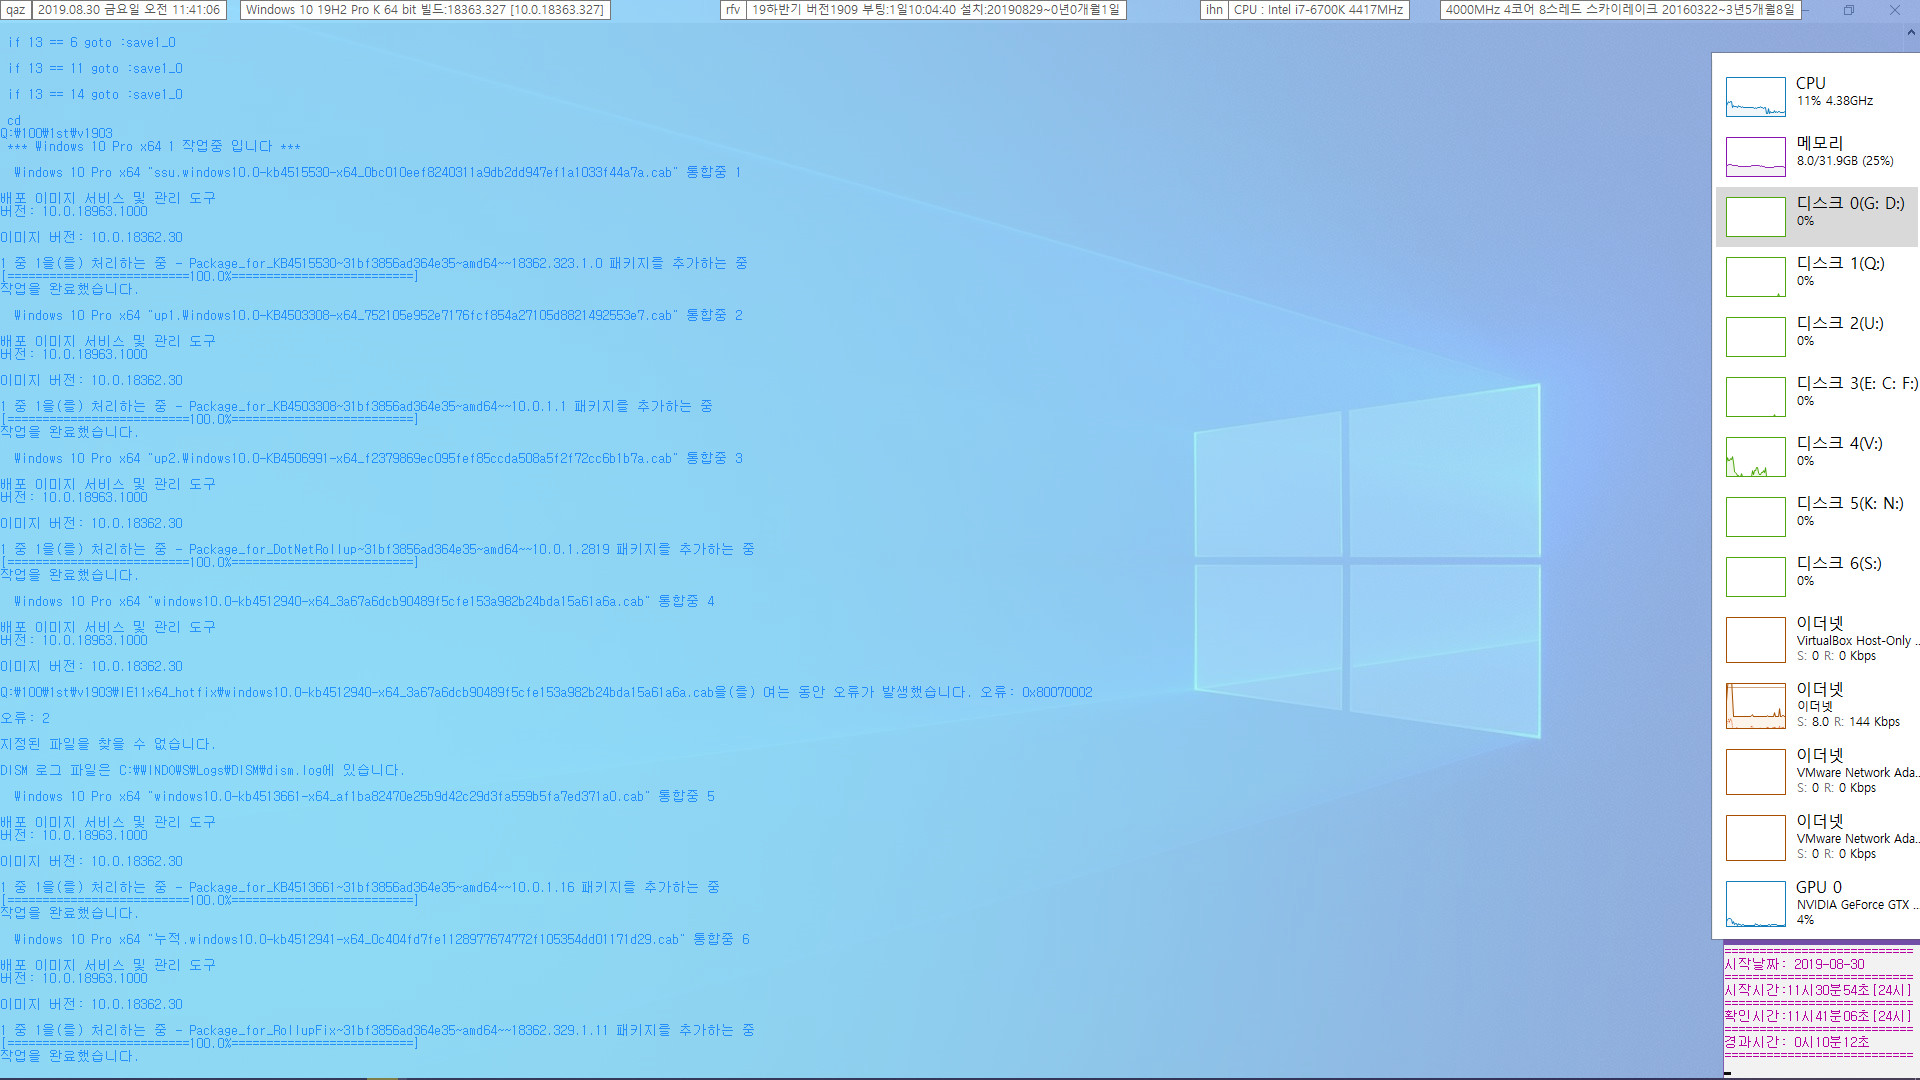 Windows 10 버전 1903 누적 업데이트 KB4512941 (OS 빌드 18362.329) [2019-08-29 일자] 릴리스 프리뷰 나왔네요 - 통합중 입니다. install.wim 2019-08-30_114106.jpg